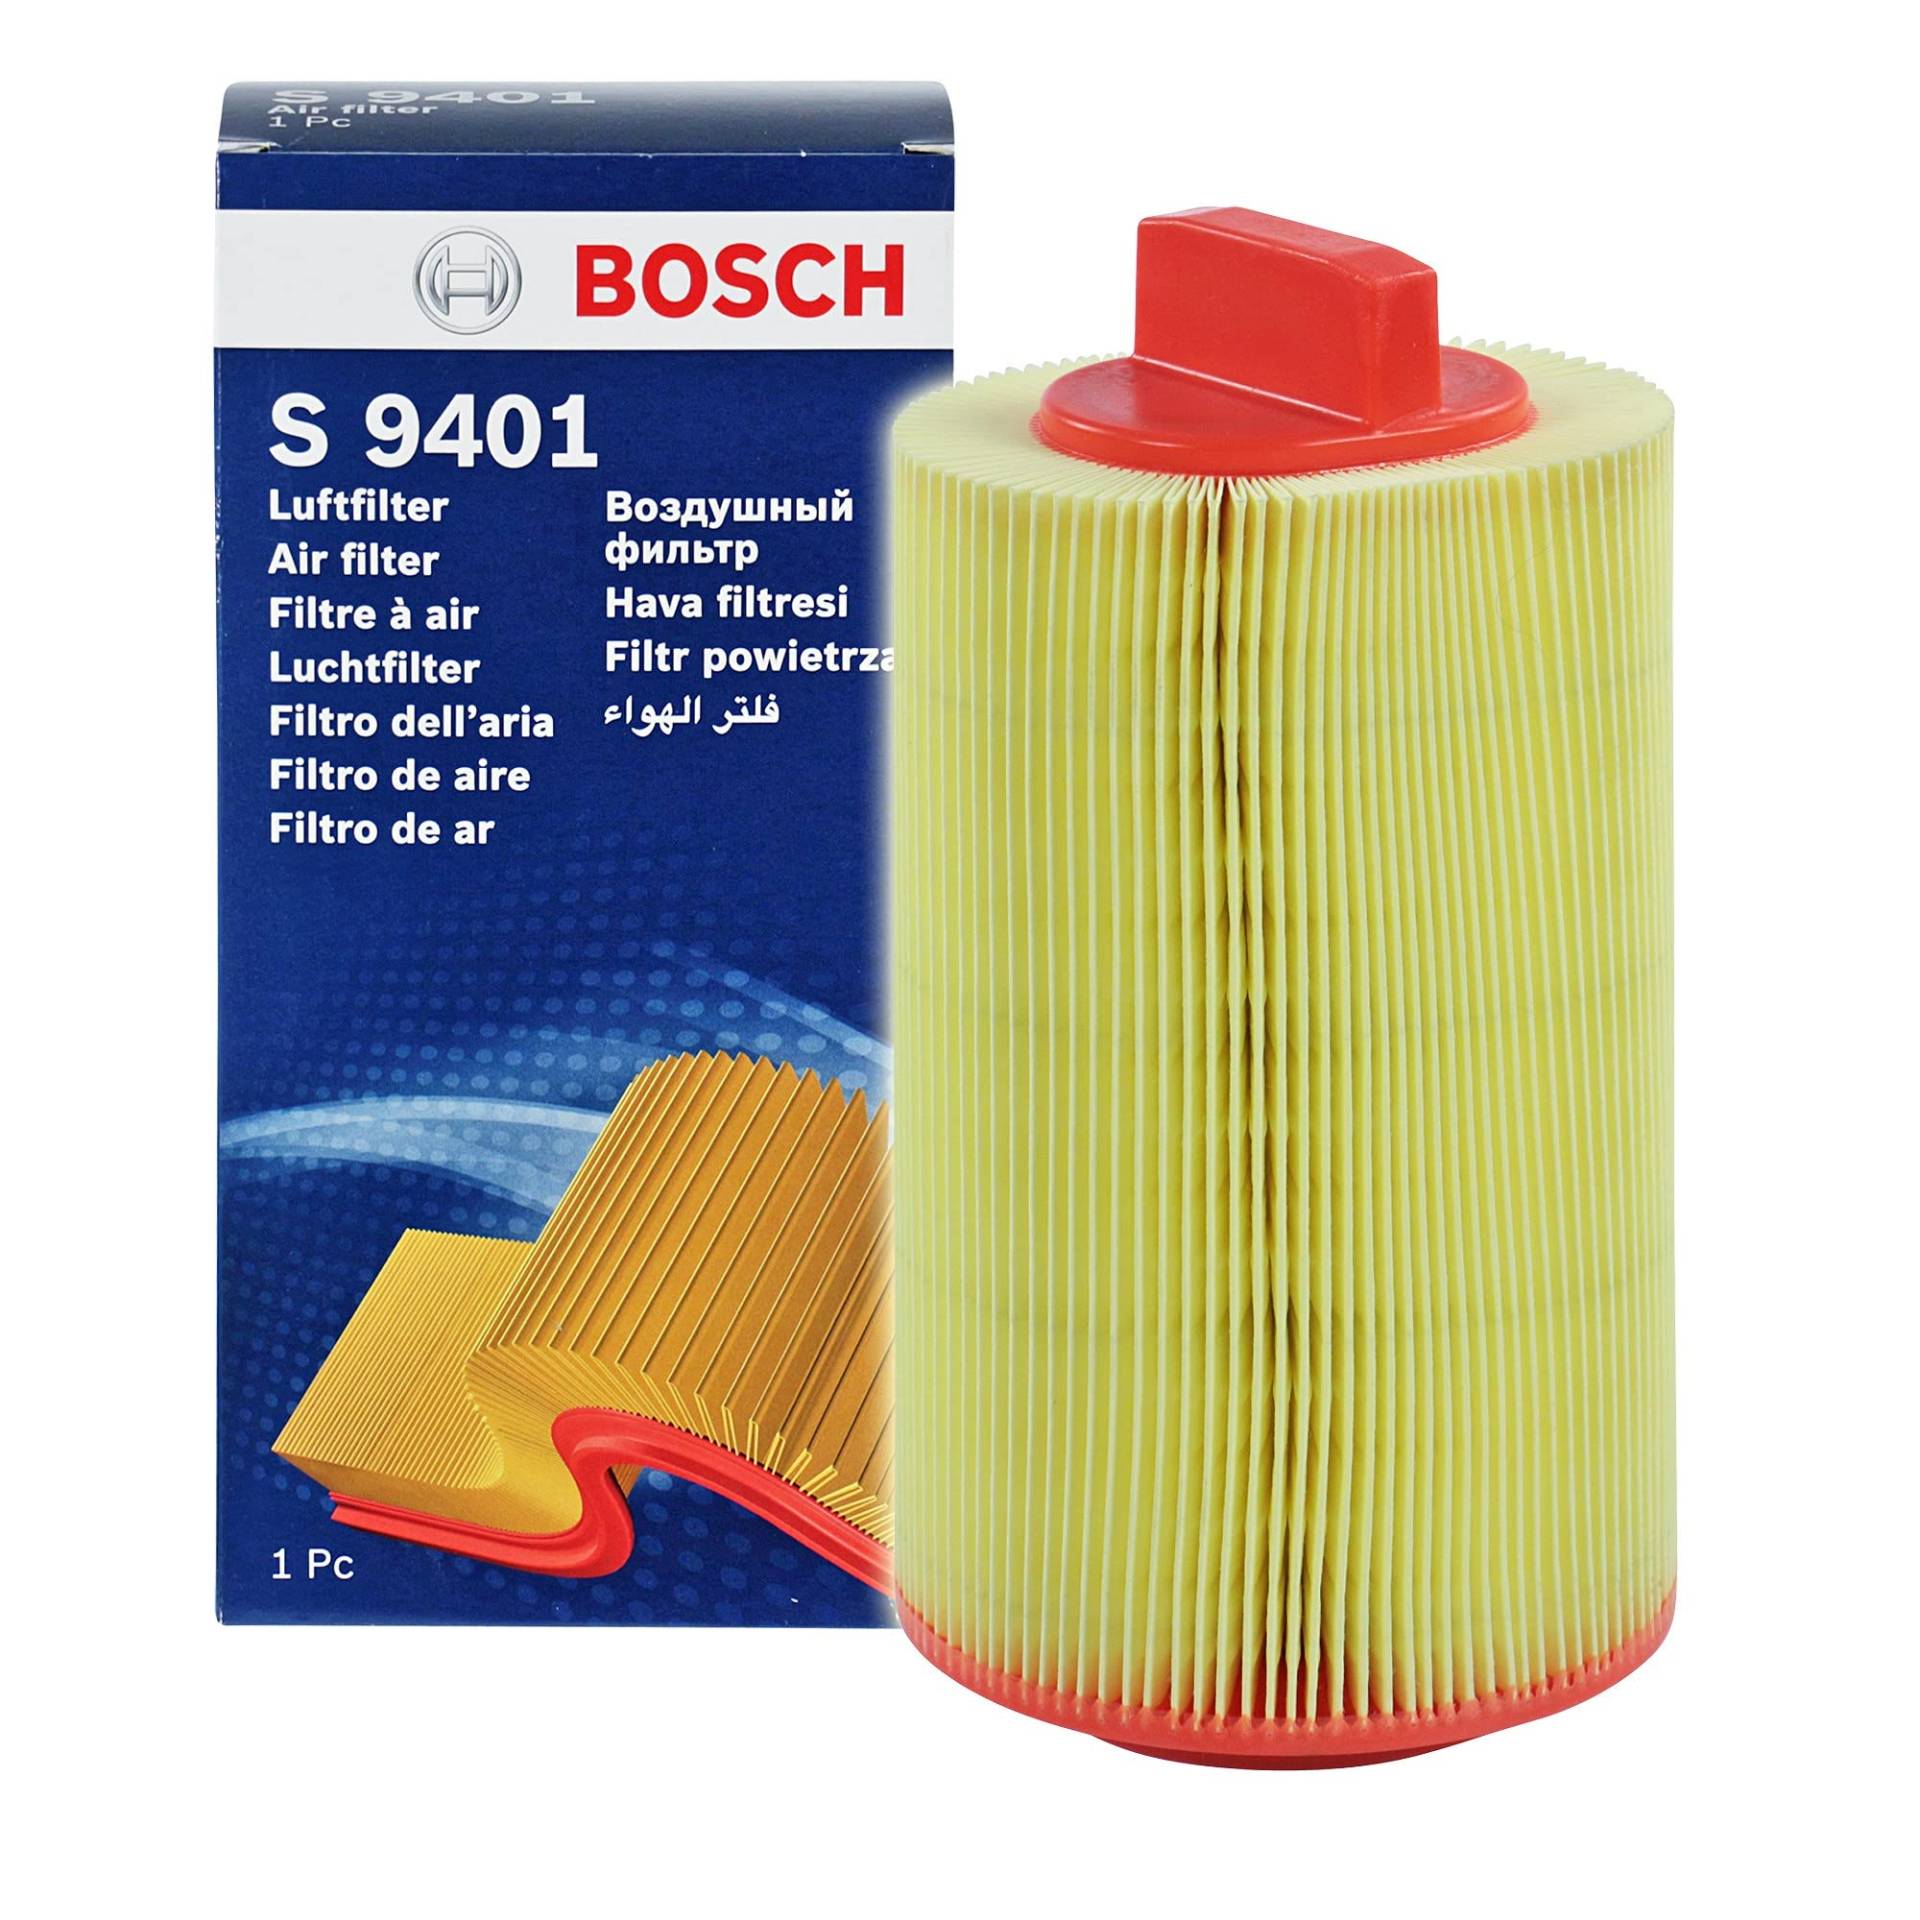 Bosch S9401 - Luftfilter Auto von Bosch Automotive